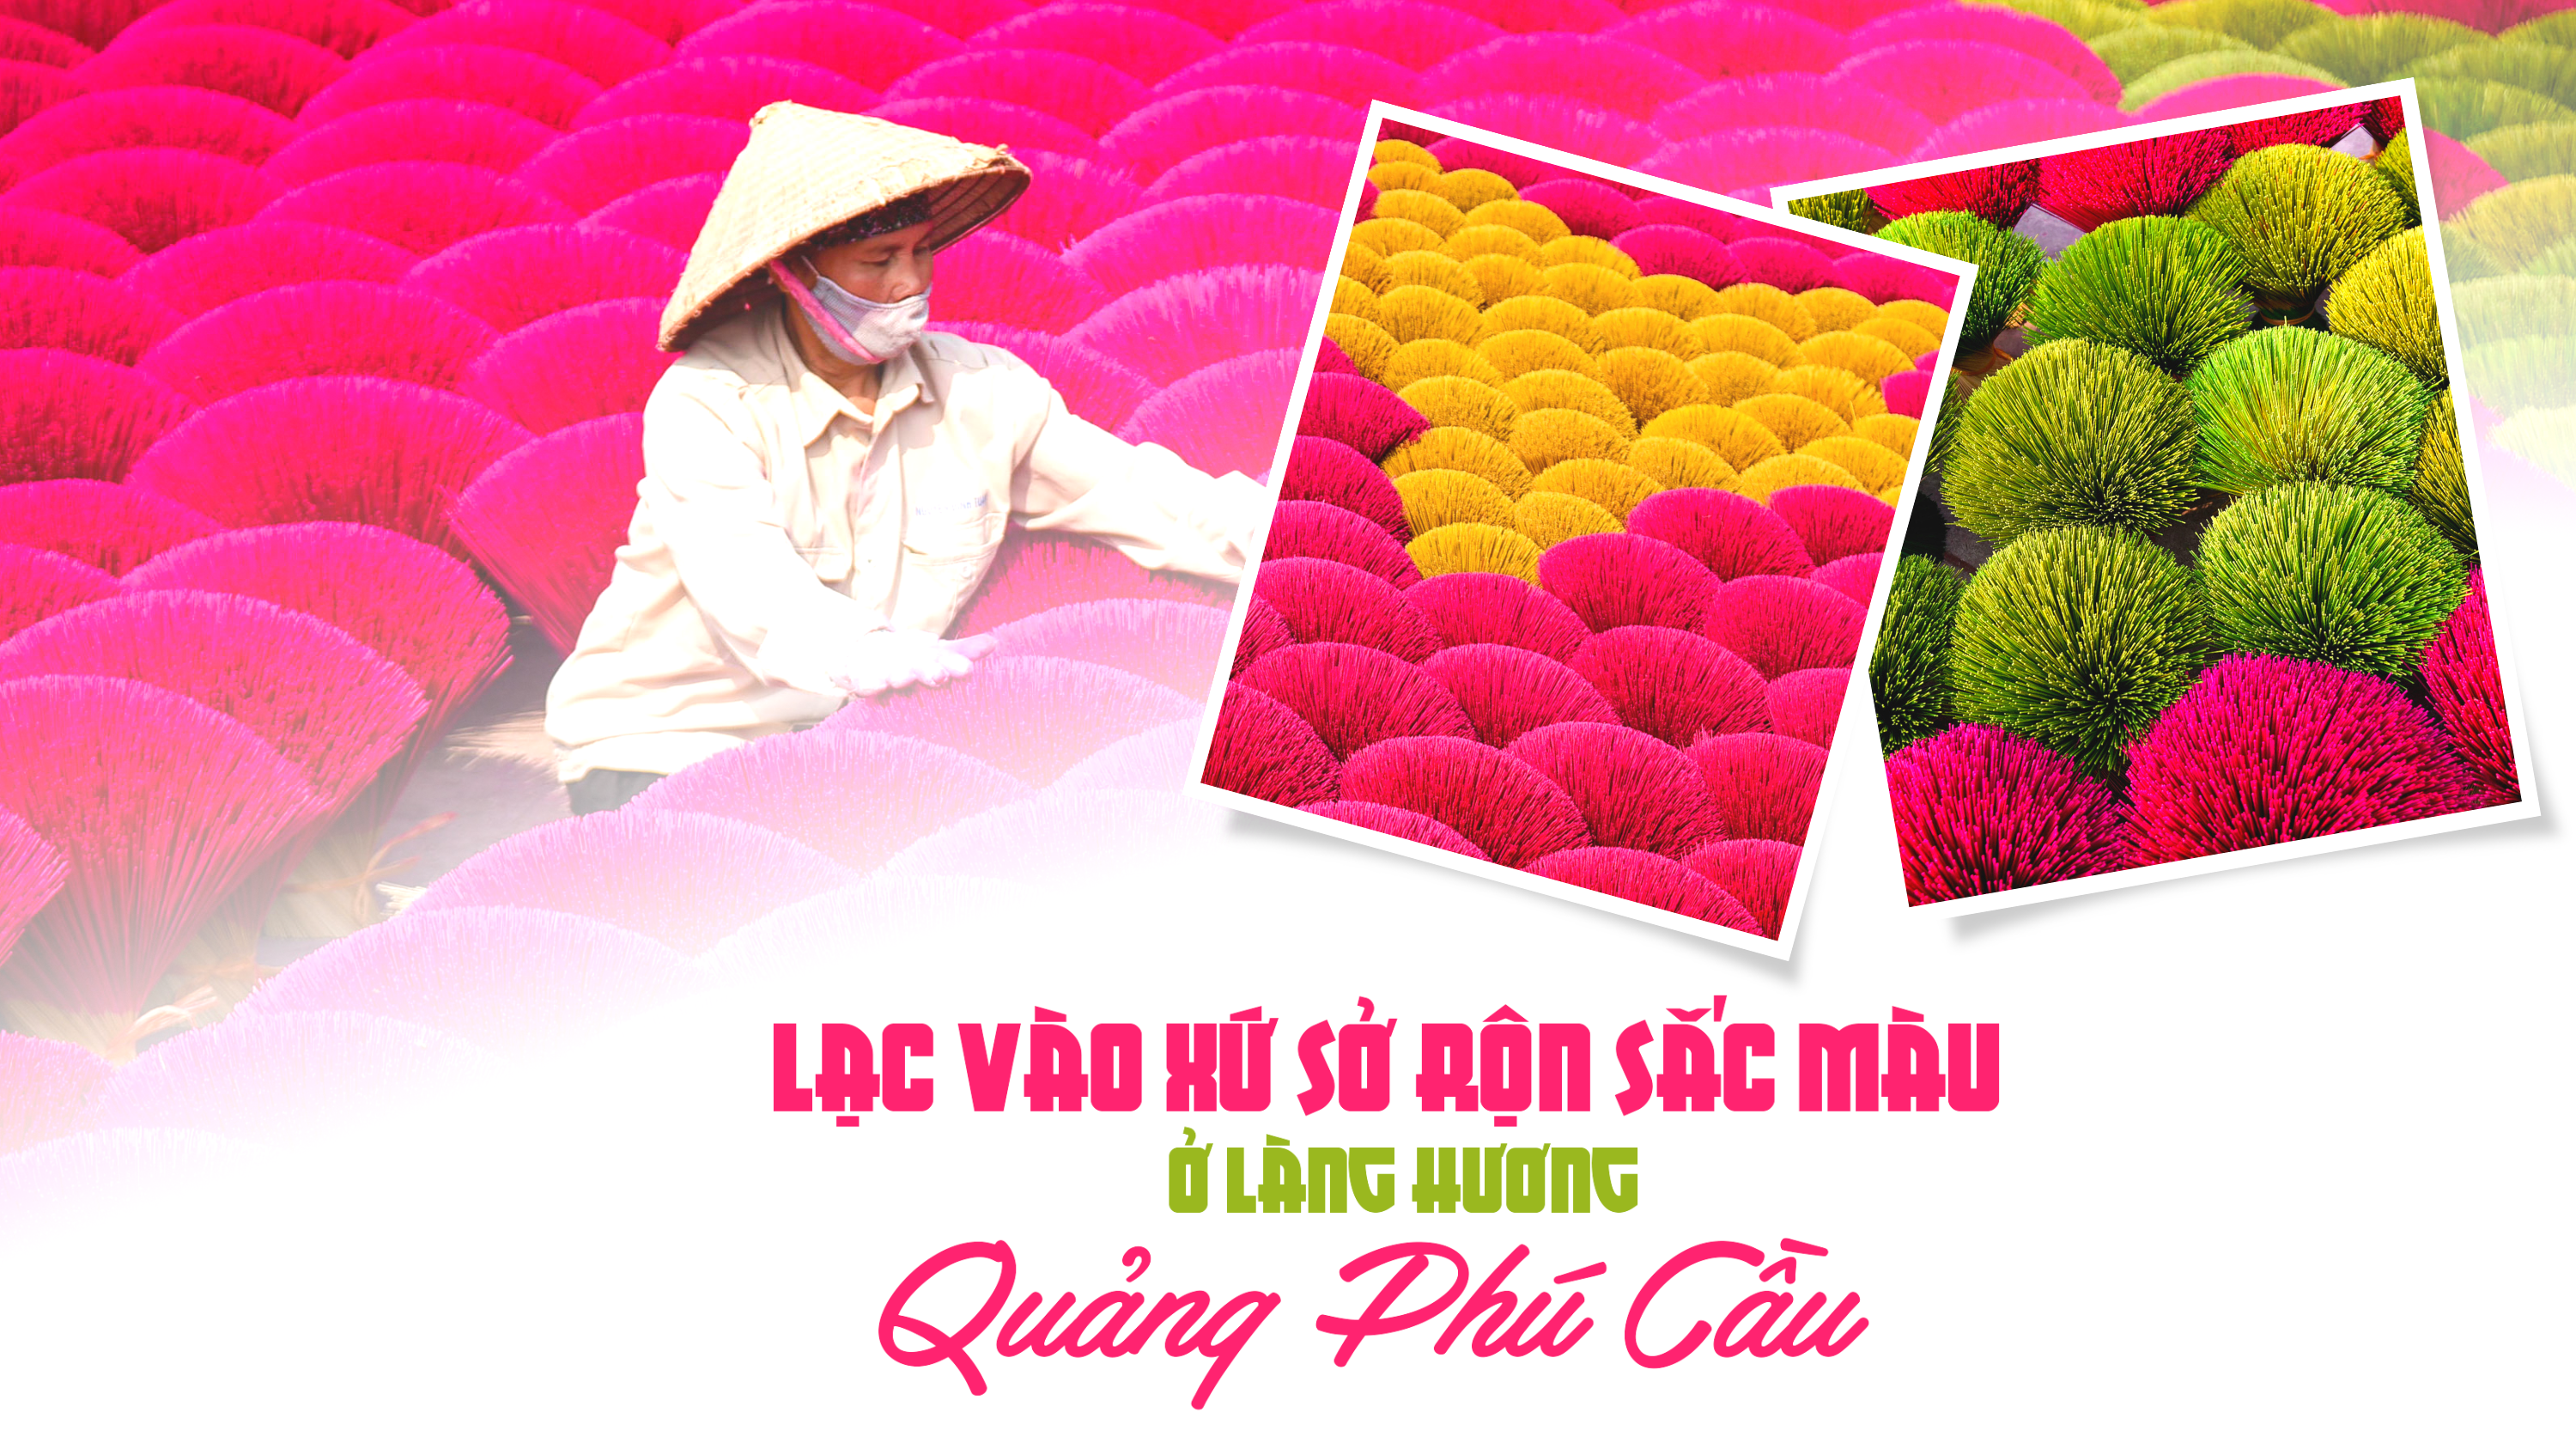 Lạc vào xứ sở rộn sắc màu ở làng hương Quảng Phú Cầu